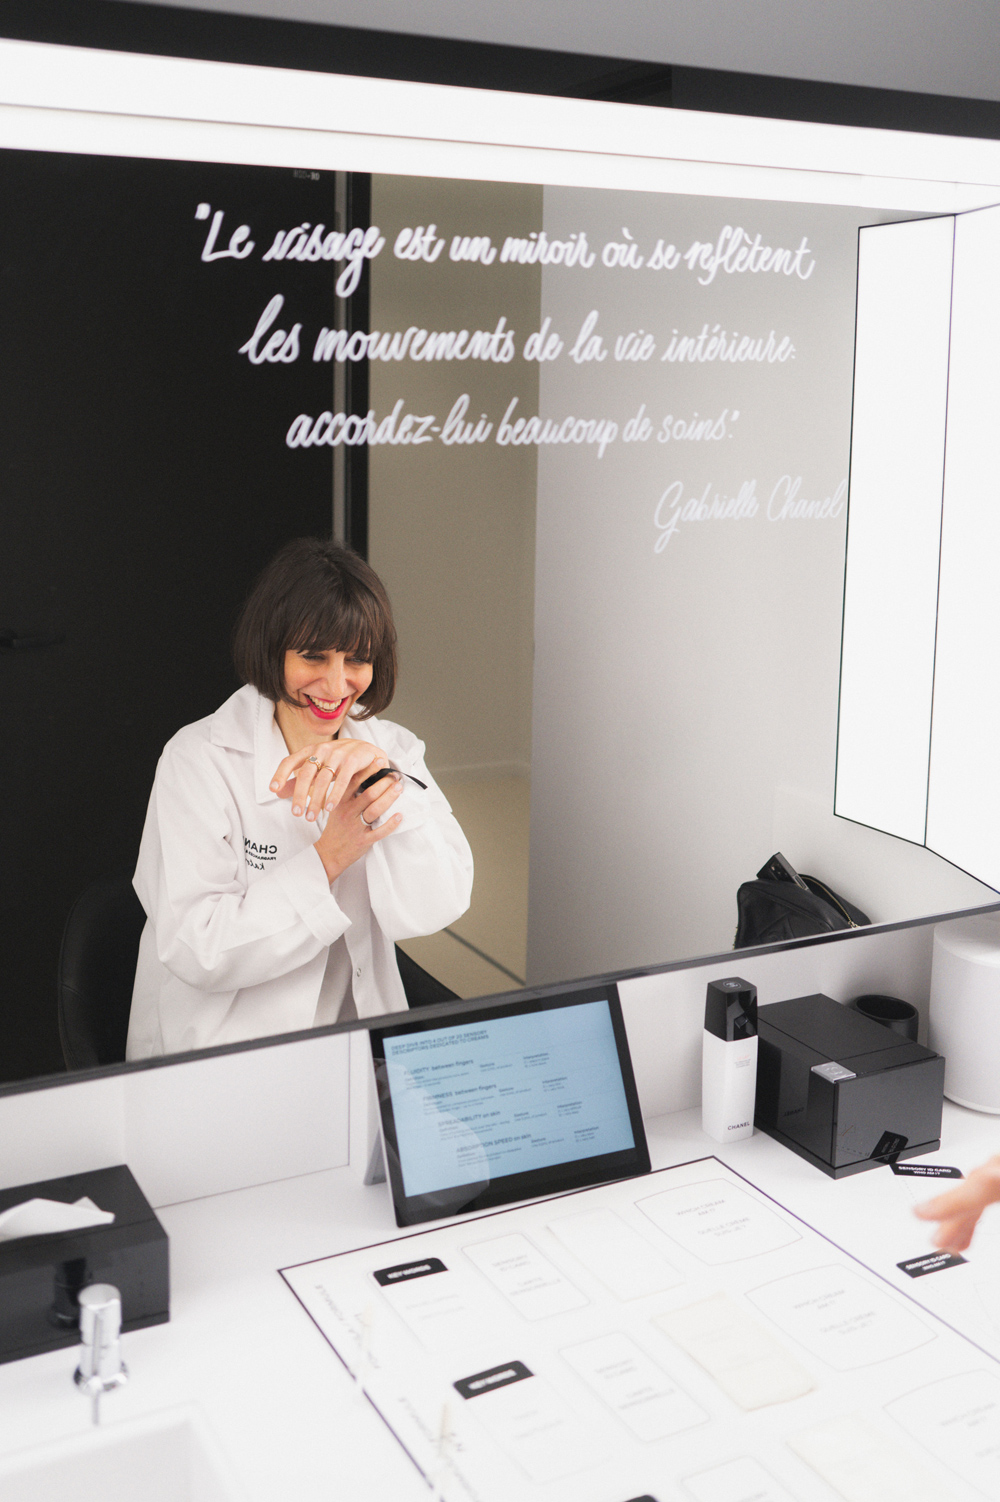 Erstmals in der Geschichte von Chanel gab es die Möglichkeit eines Besuchs im Forschungszentrum von Pantin. Sonrisa war dabei und hat neben Bildern auch viele Hintegrundinformationen mitgebracht.